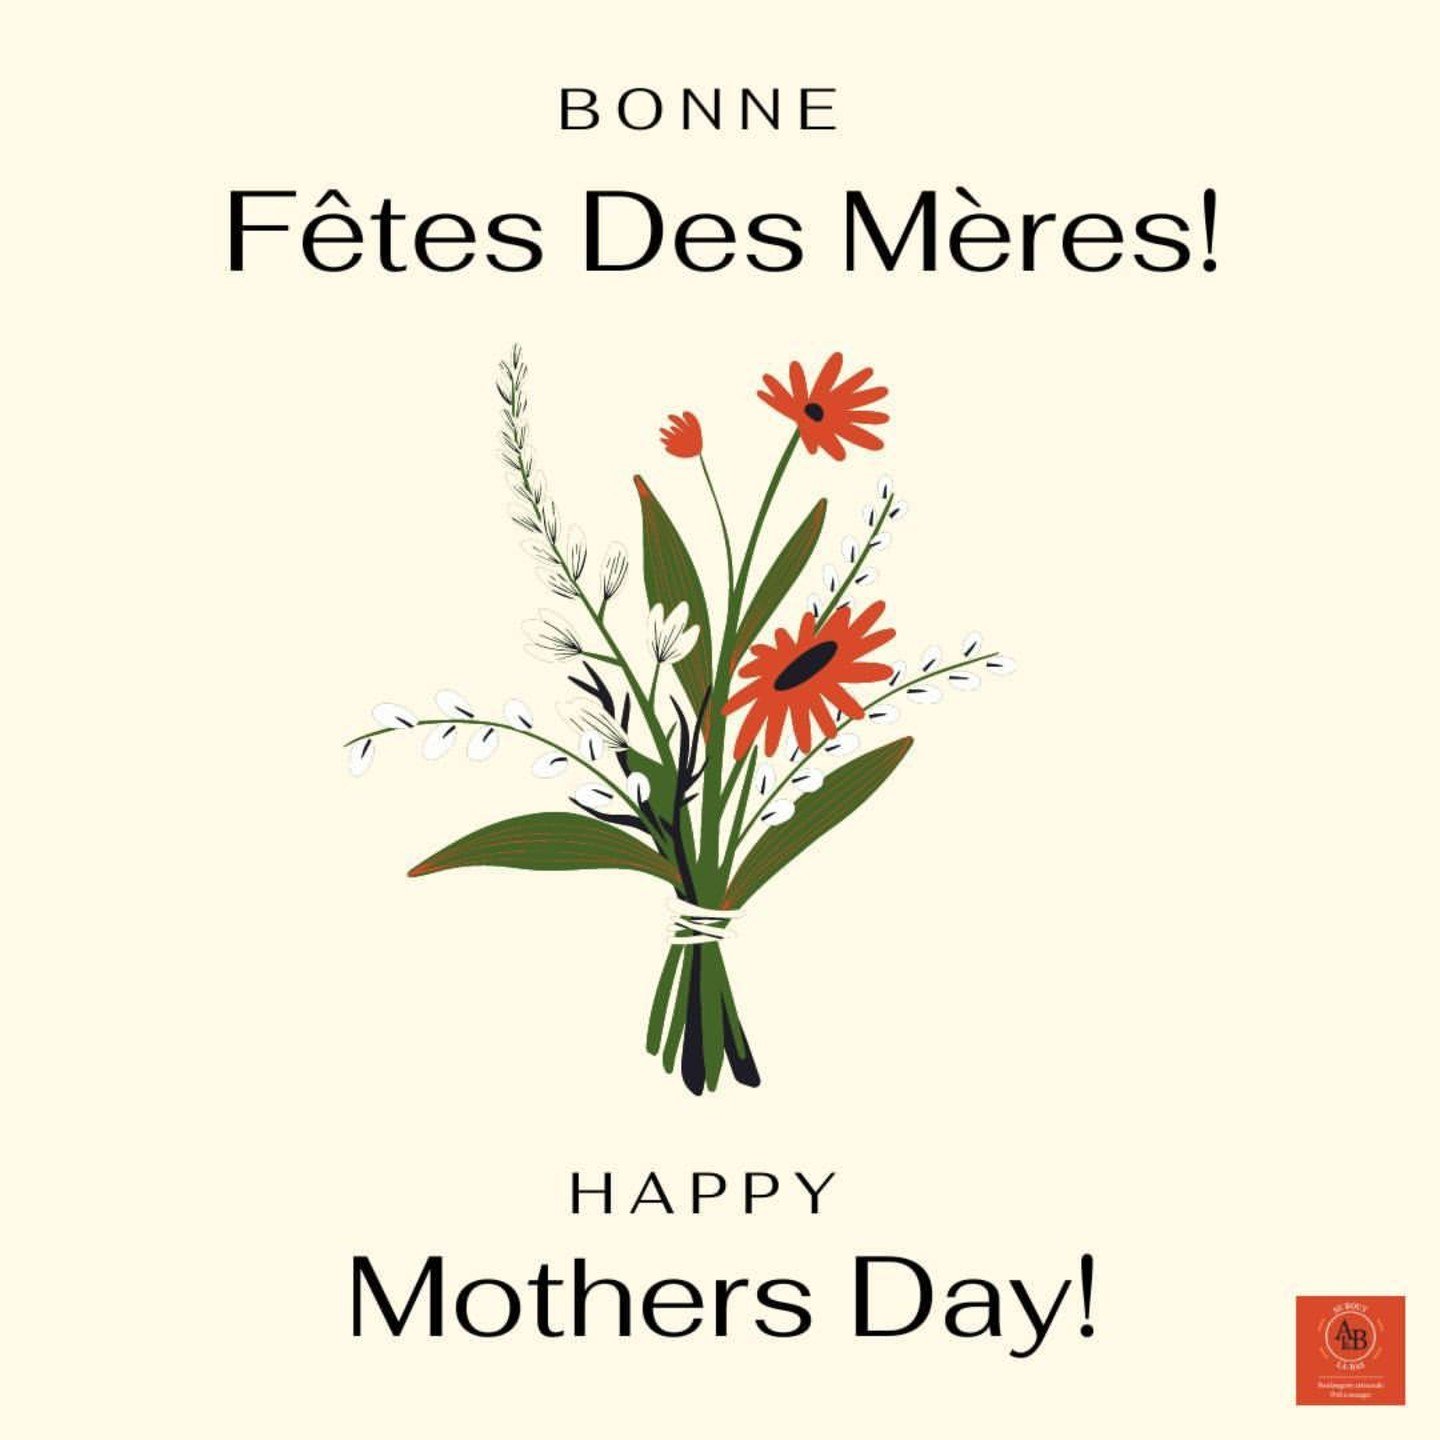 Bonne F&ecirc;te Des M&egrave;res
💐
Happy Mother's Day